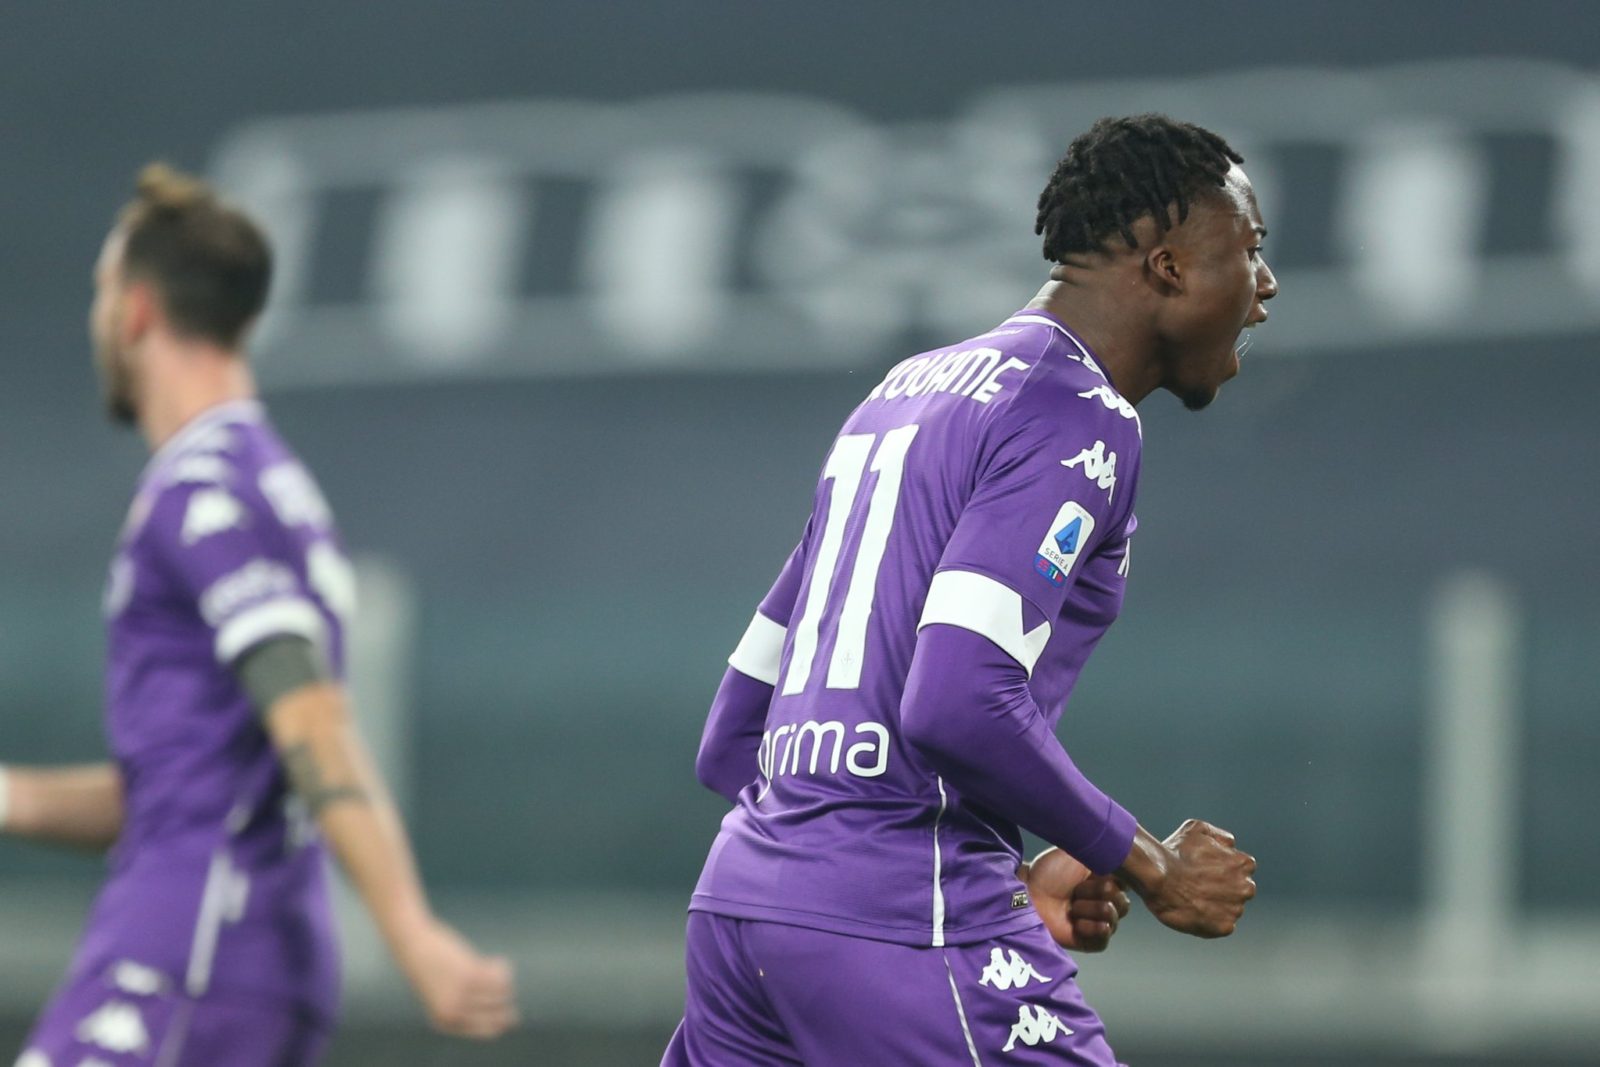 Al 57′ con una sassata Kouamé firma l’1-1 per la Fiorentina. I viola tornano in partita